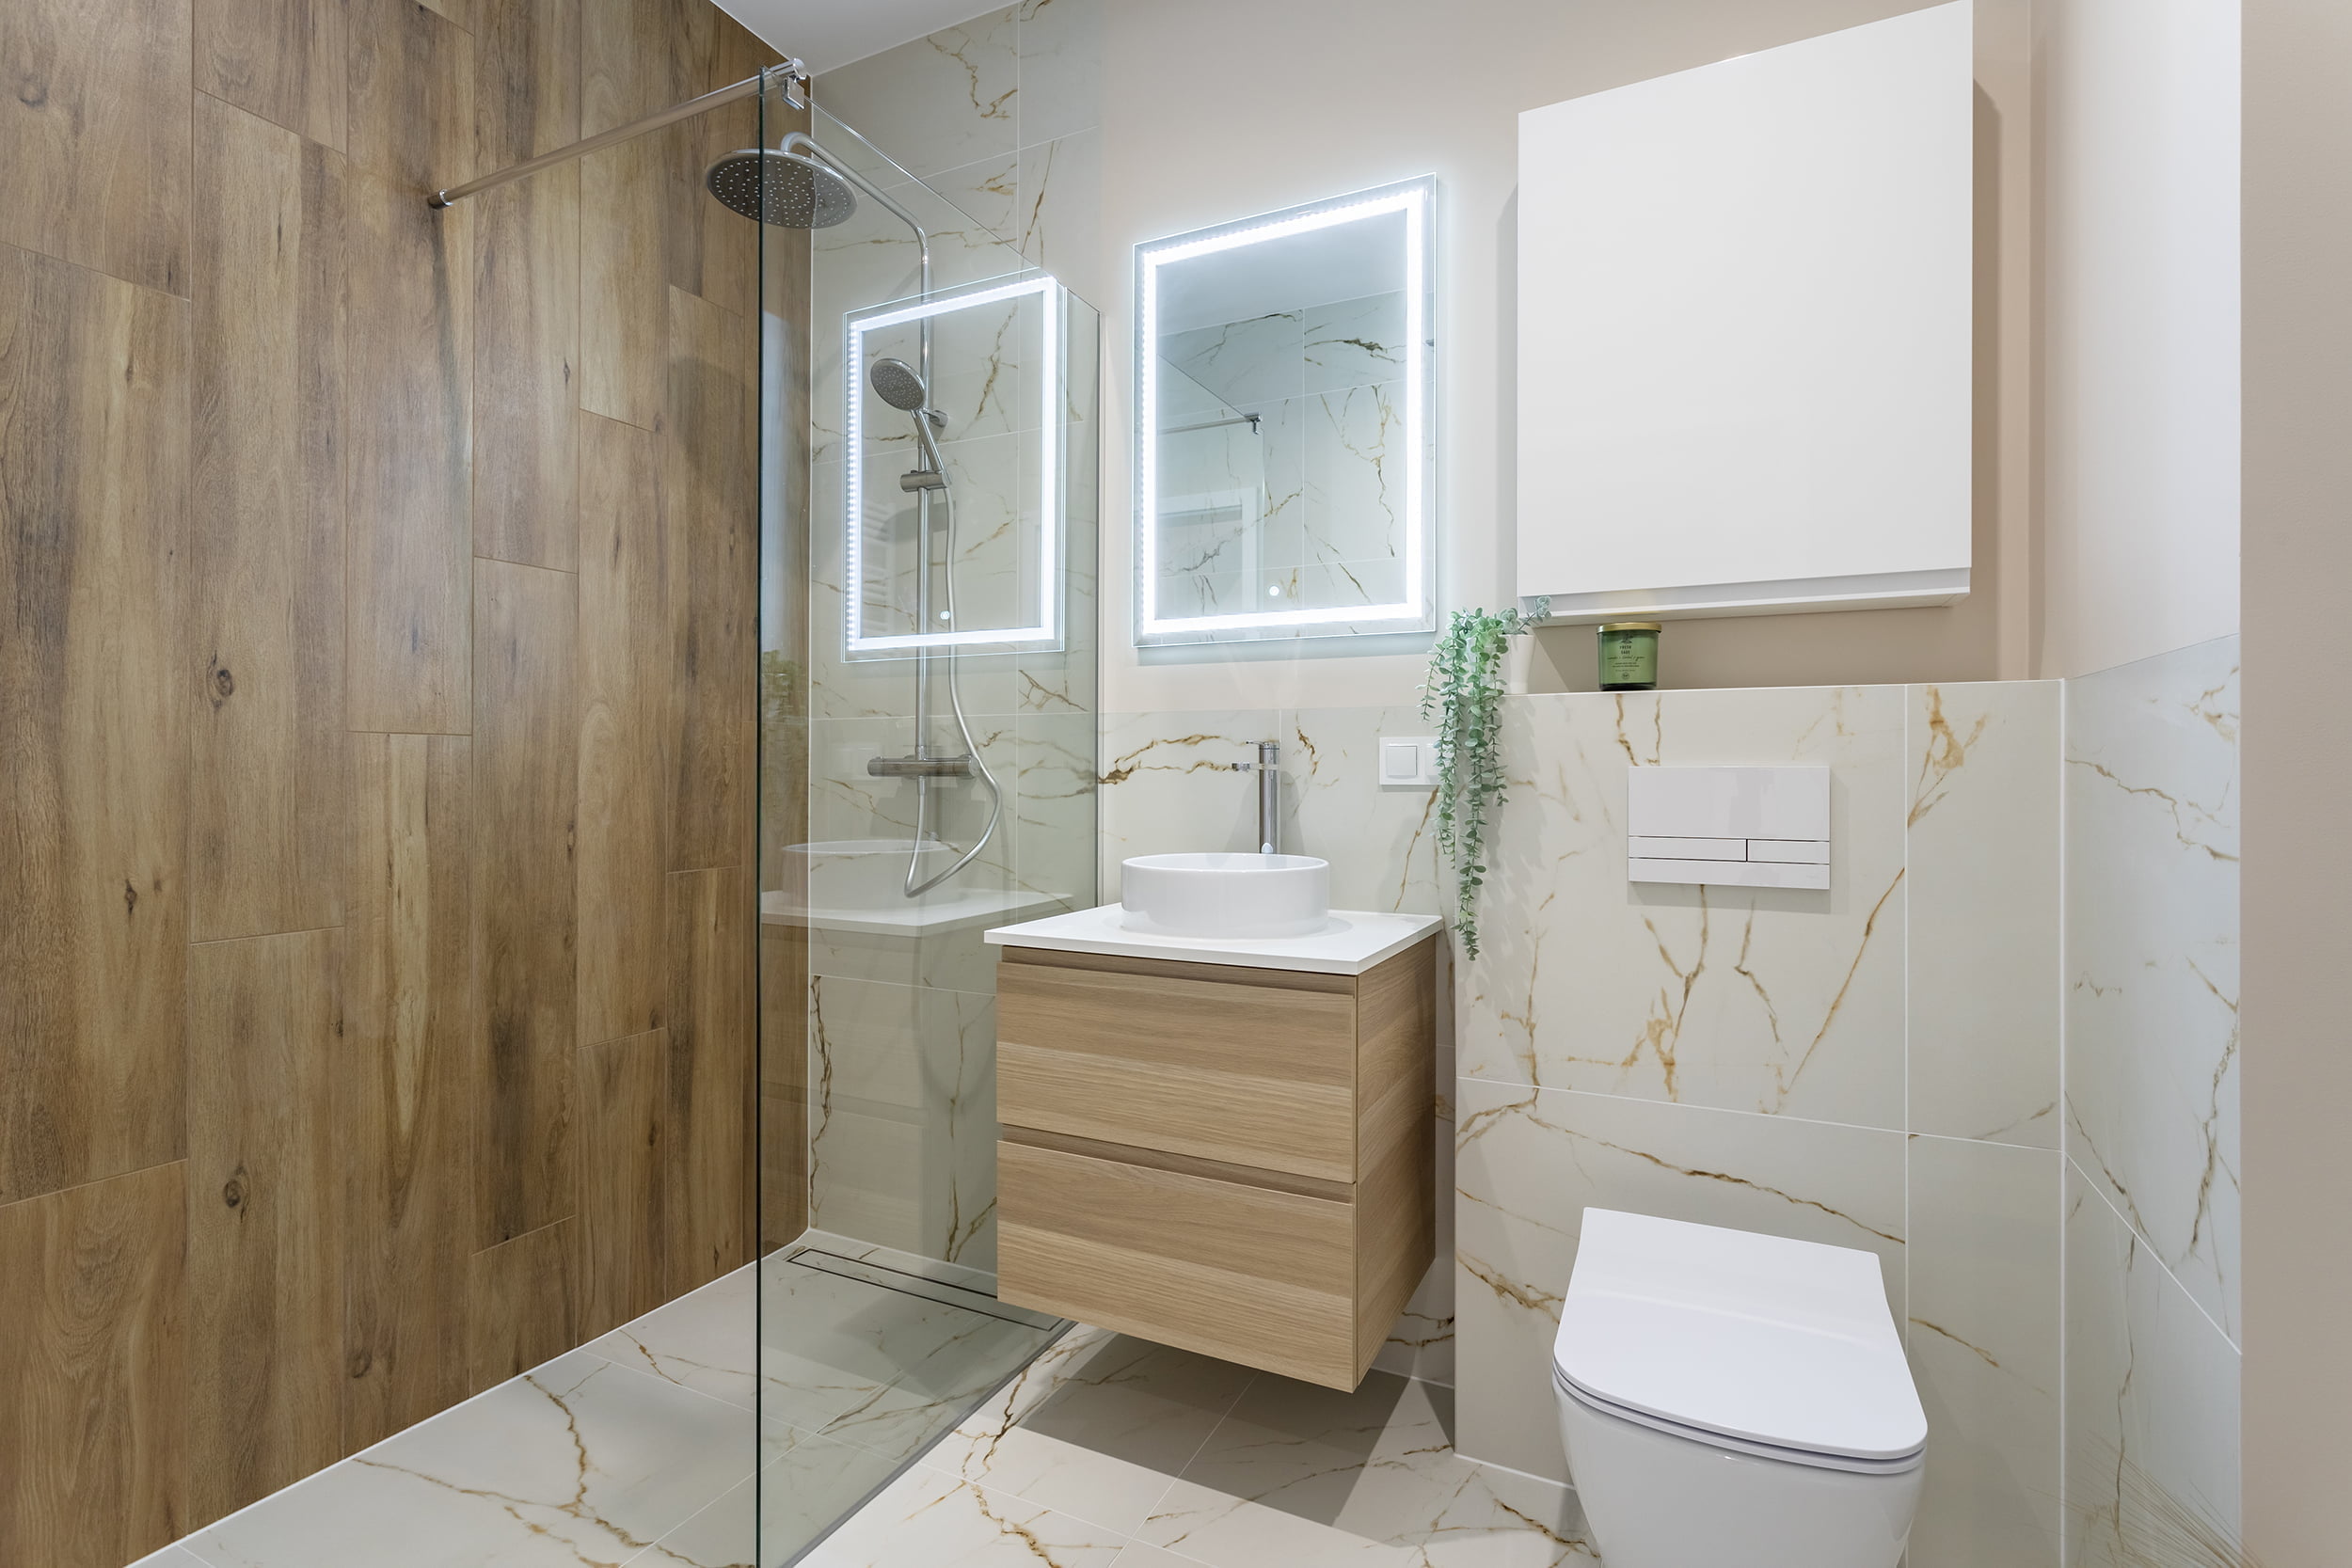 łazienka mała biała z drewnem minimalistyczna jasna aranżacja Beata Kołodziejczyk